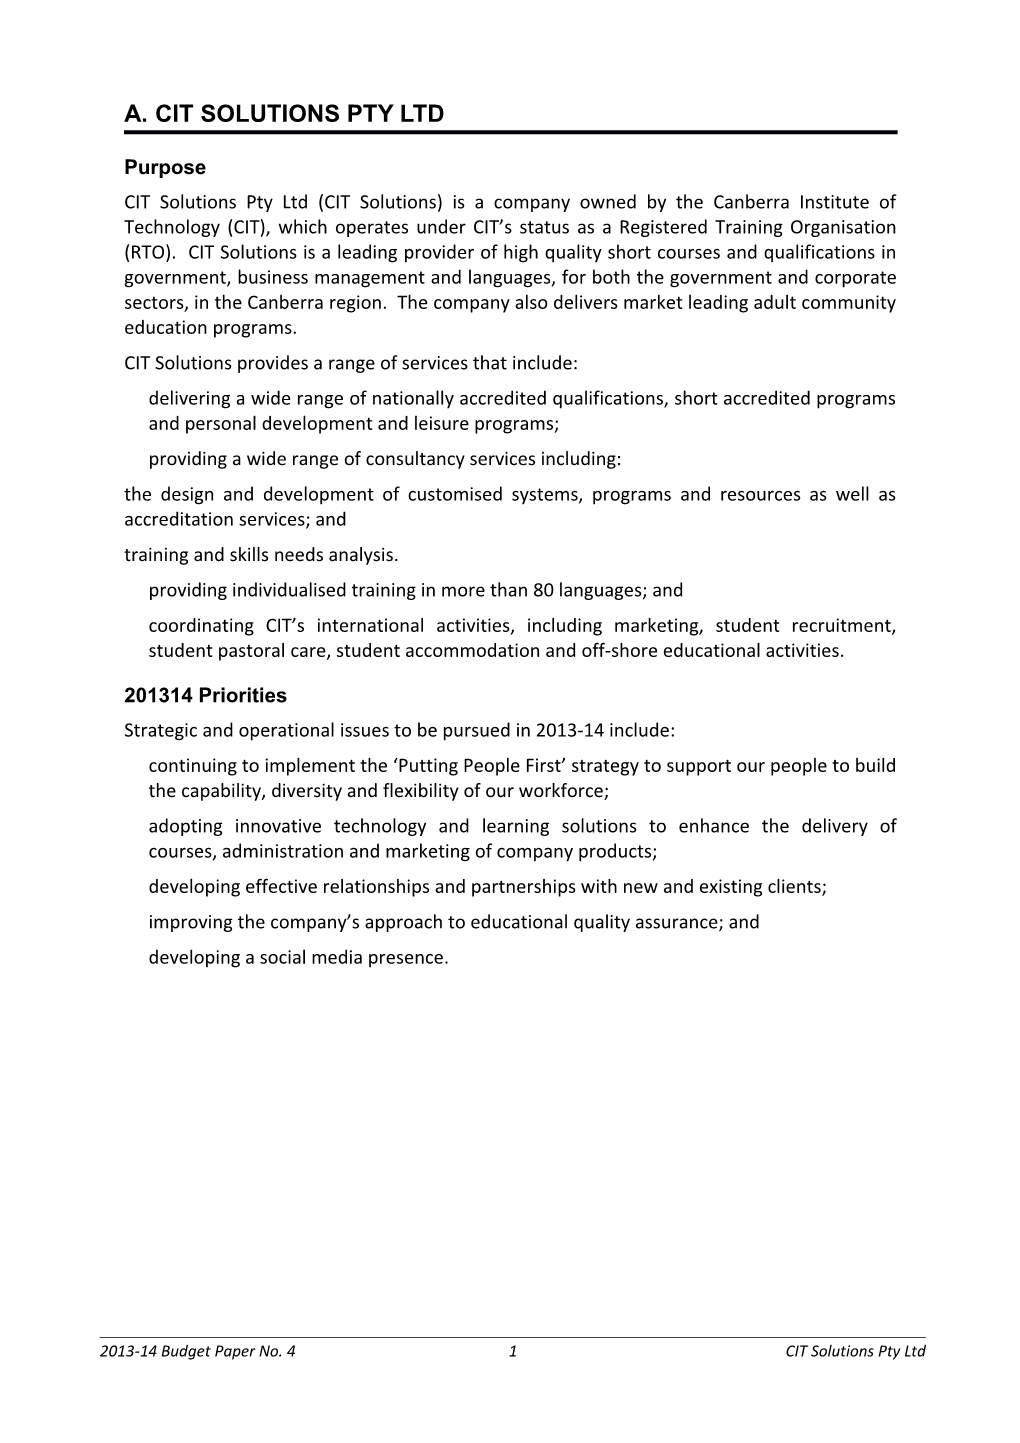 2013-14 Budget Paper 4: CIT Solutions Pty Ltd